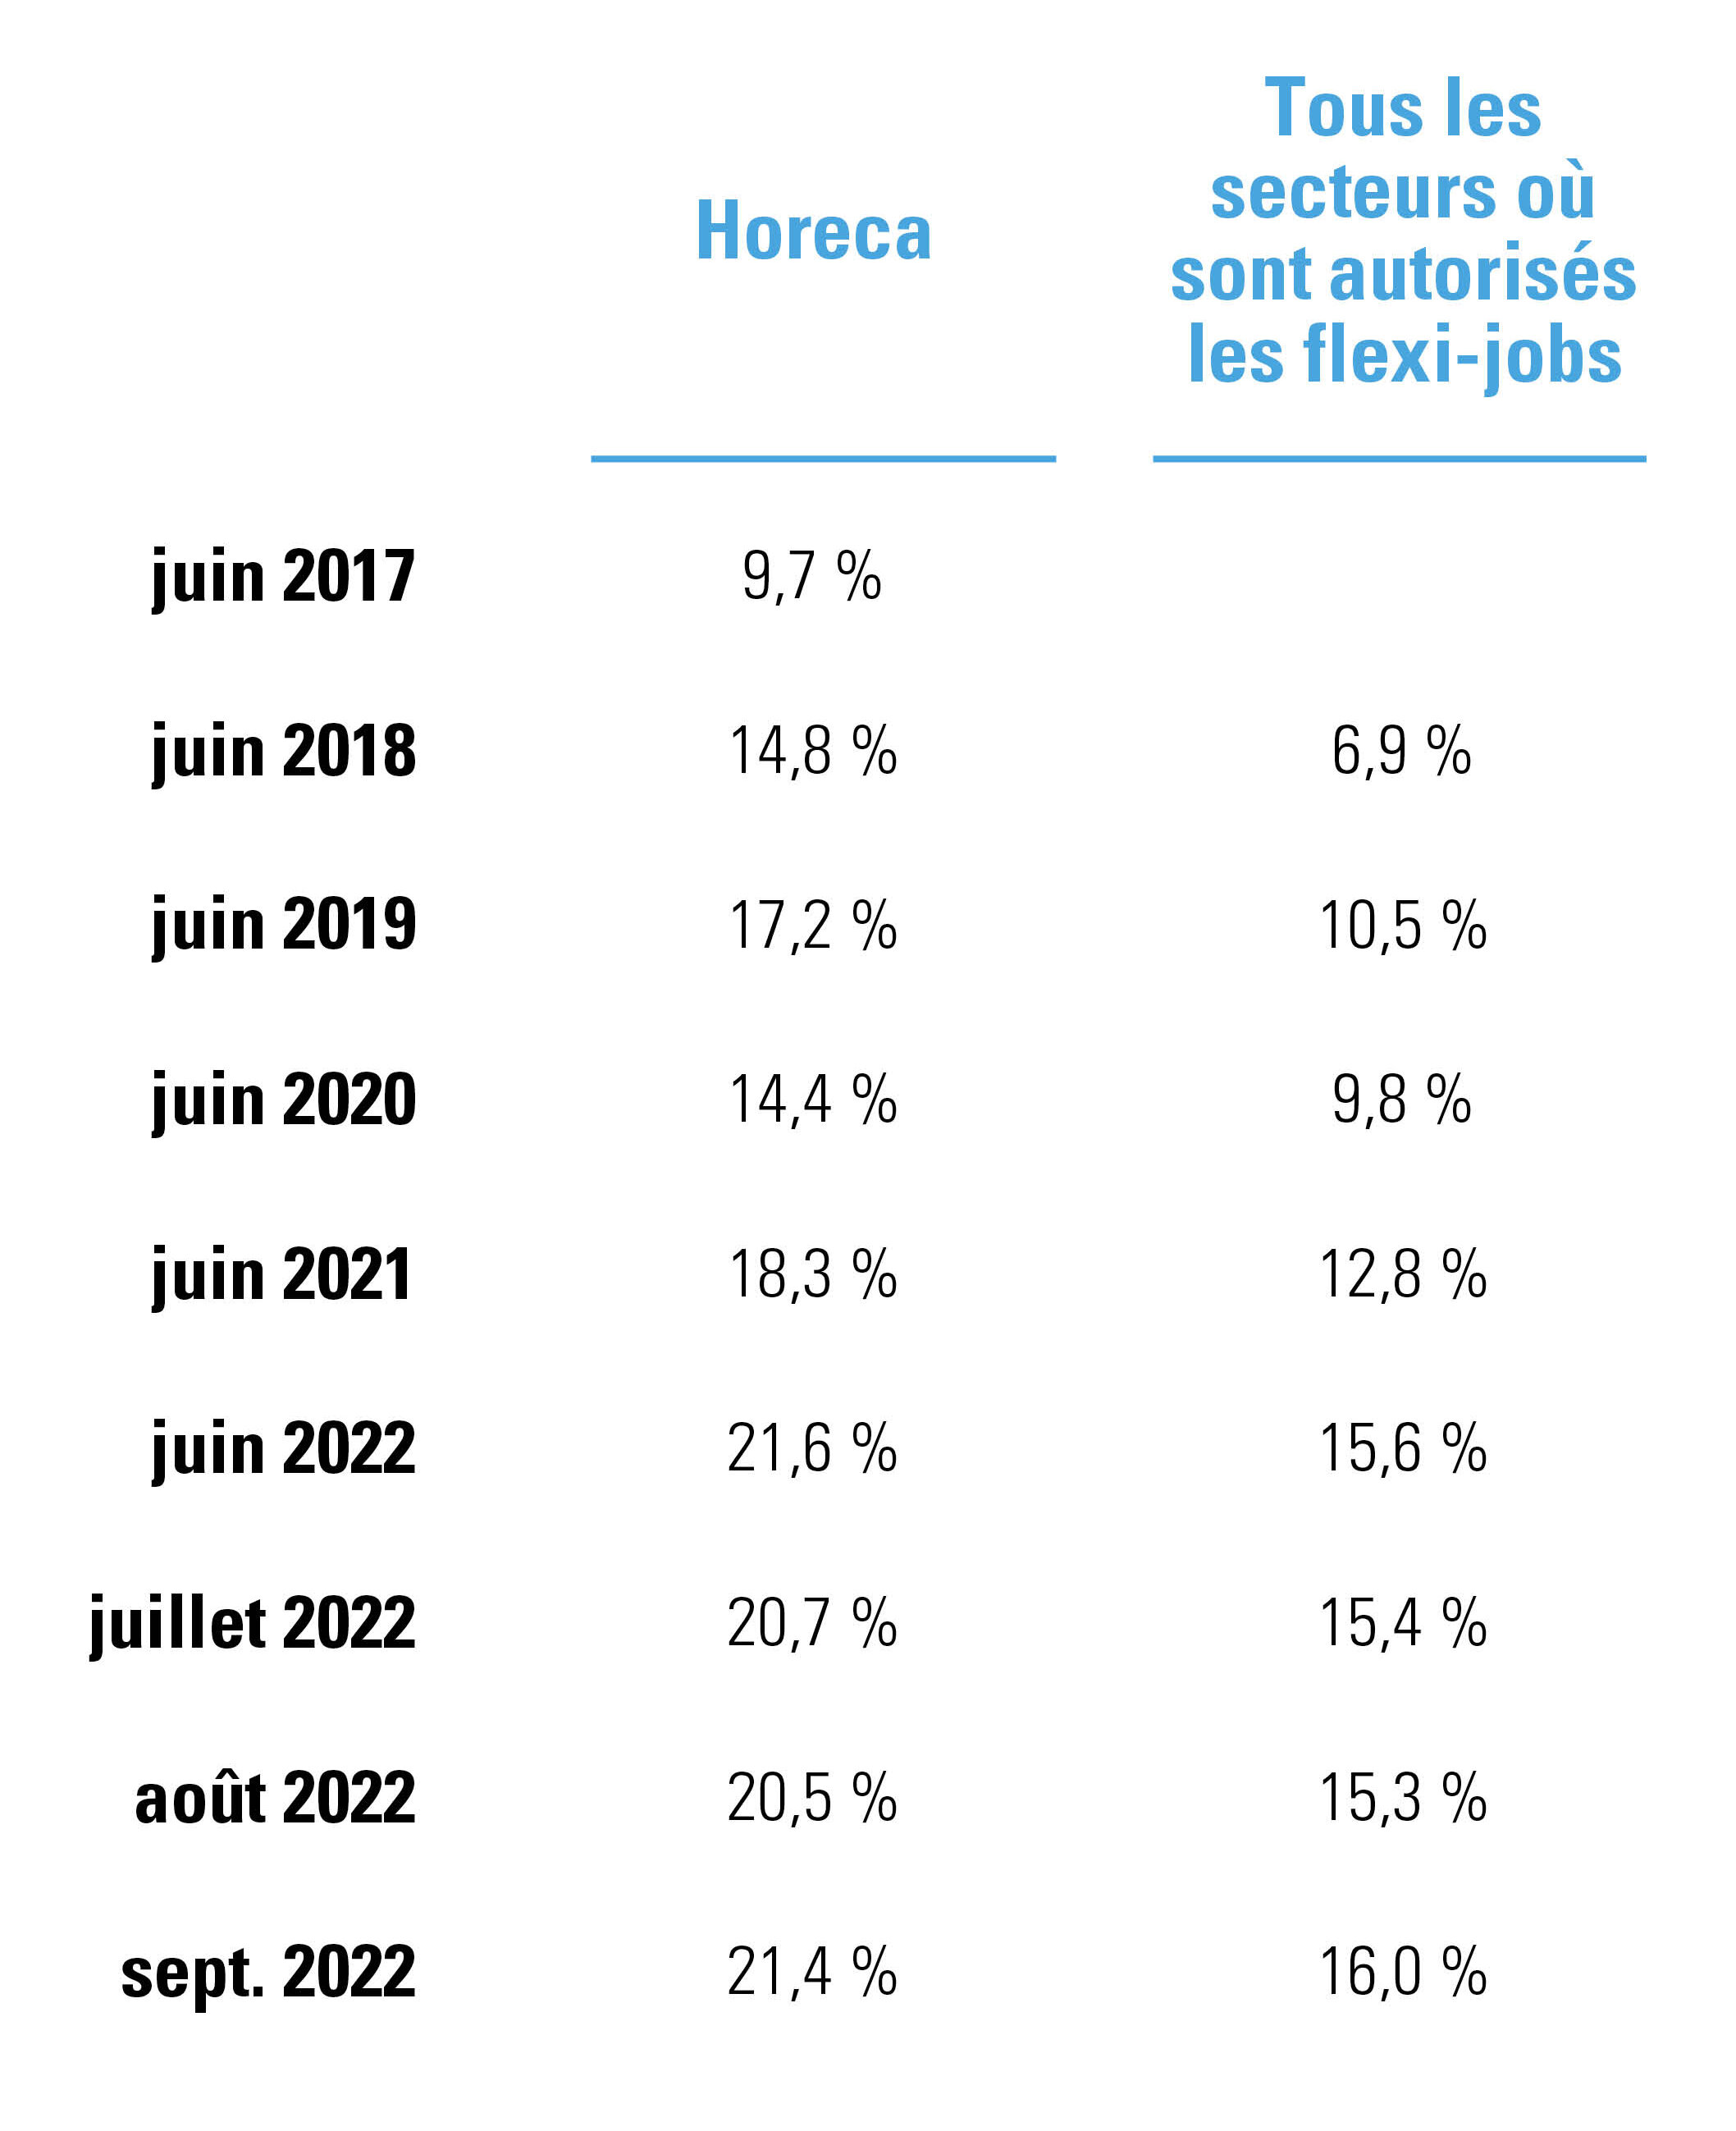 Part des flexi-jobs dans l’horeca et les autres secteurs, y compris l’évolution au cours des cinq dernières années